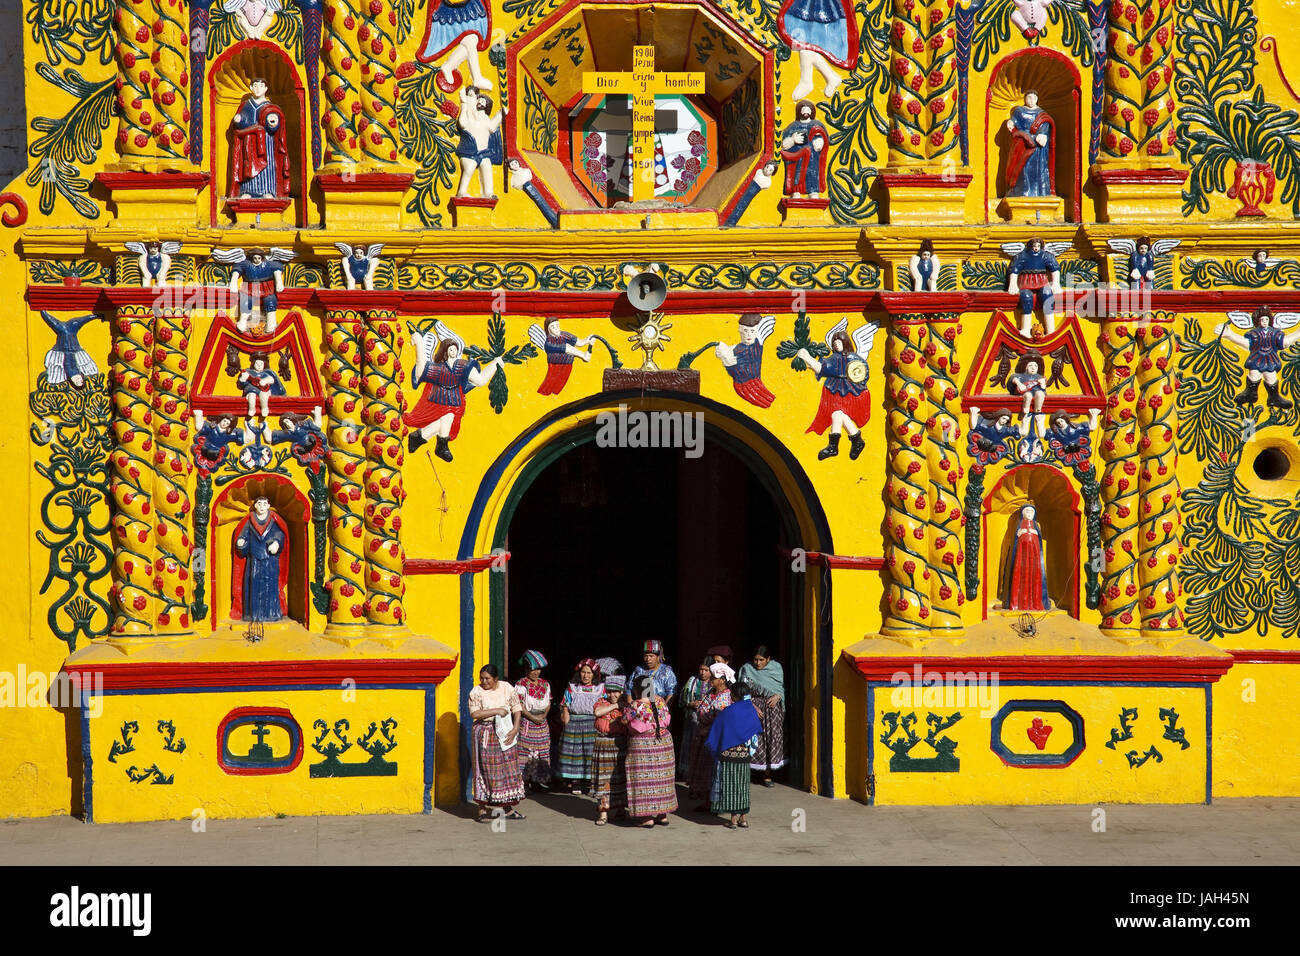 Iglesia maya de guatemala fotografías e imágenes de alta resolución -  Página 6 - Alamy